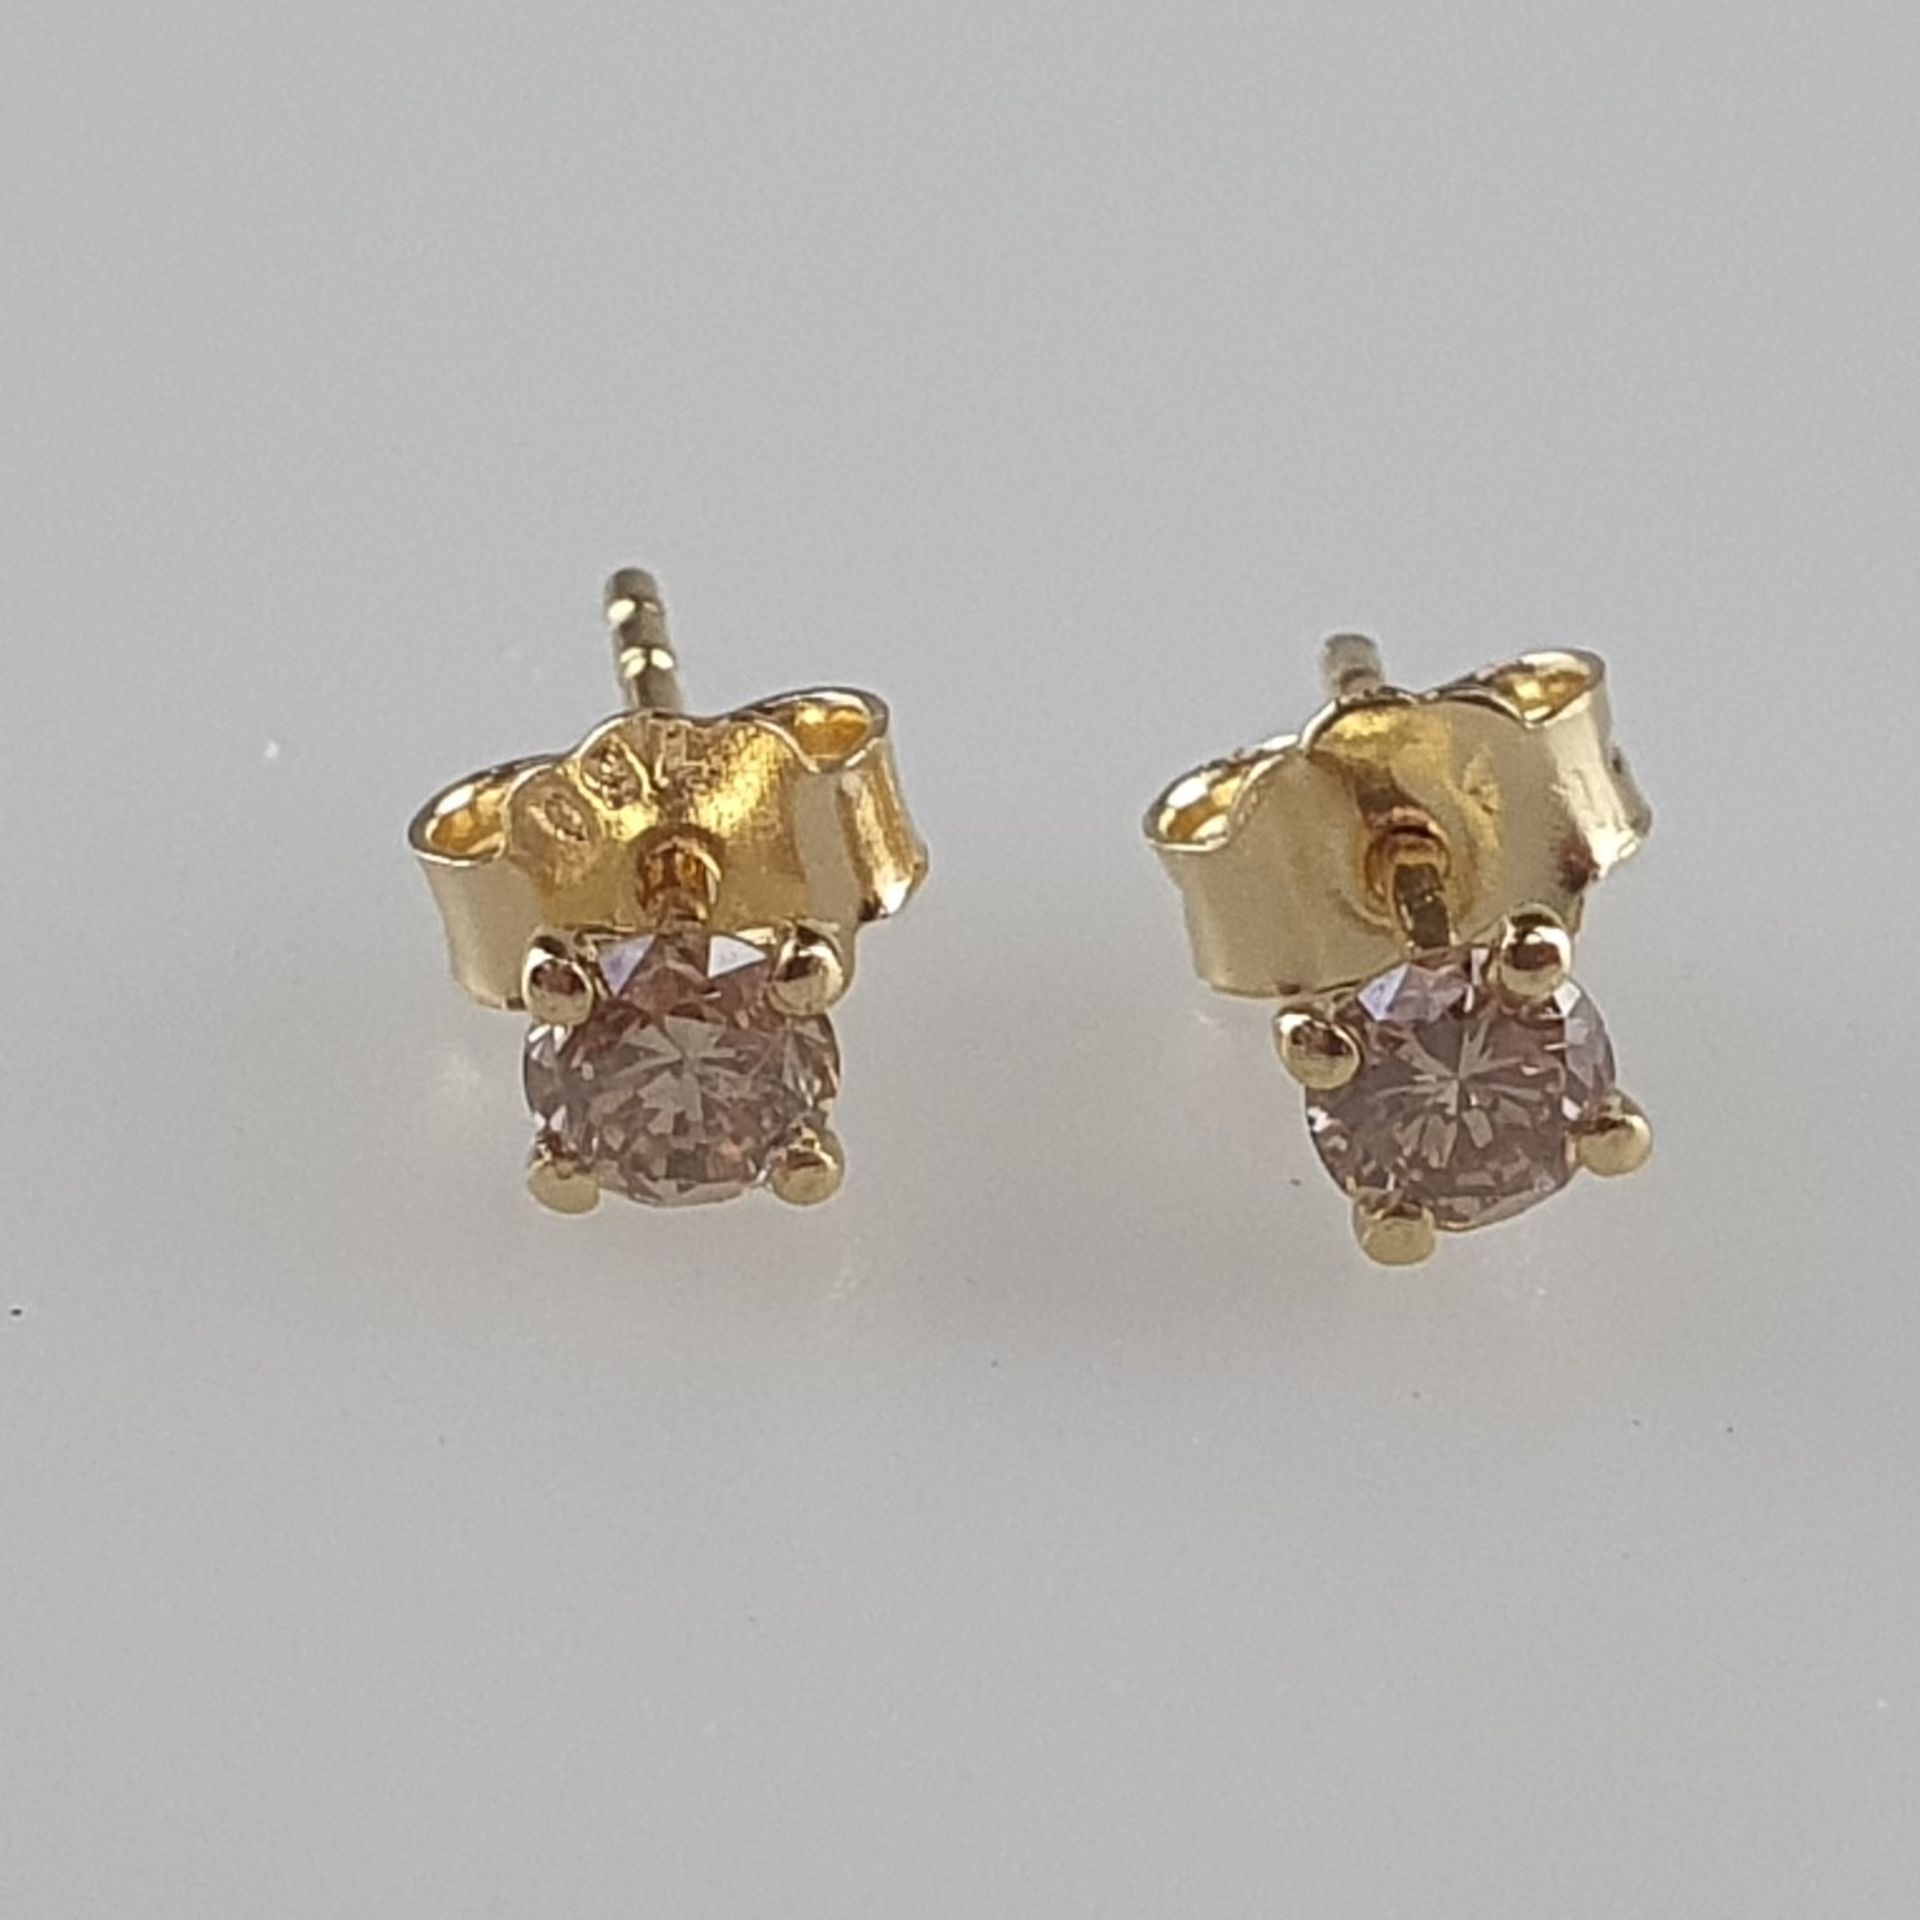 Ein Paar Diamant-Ohrstecker - Gelbgold 750/000, Sicherungen gestempelt, jeweils besetzt mit 1 Diama